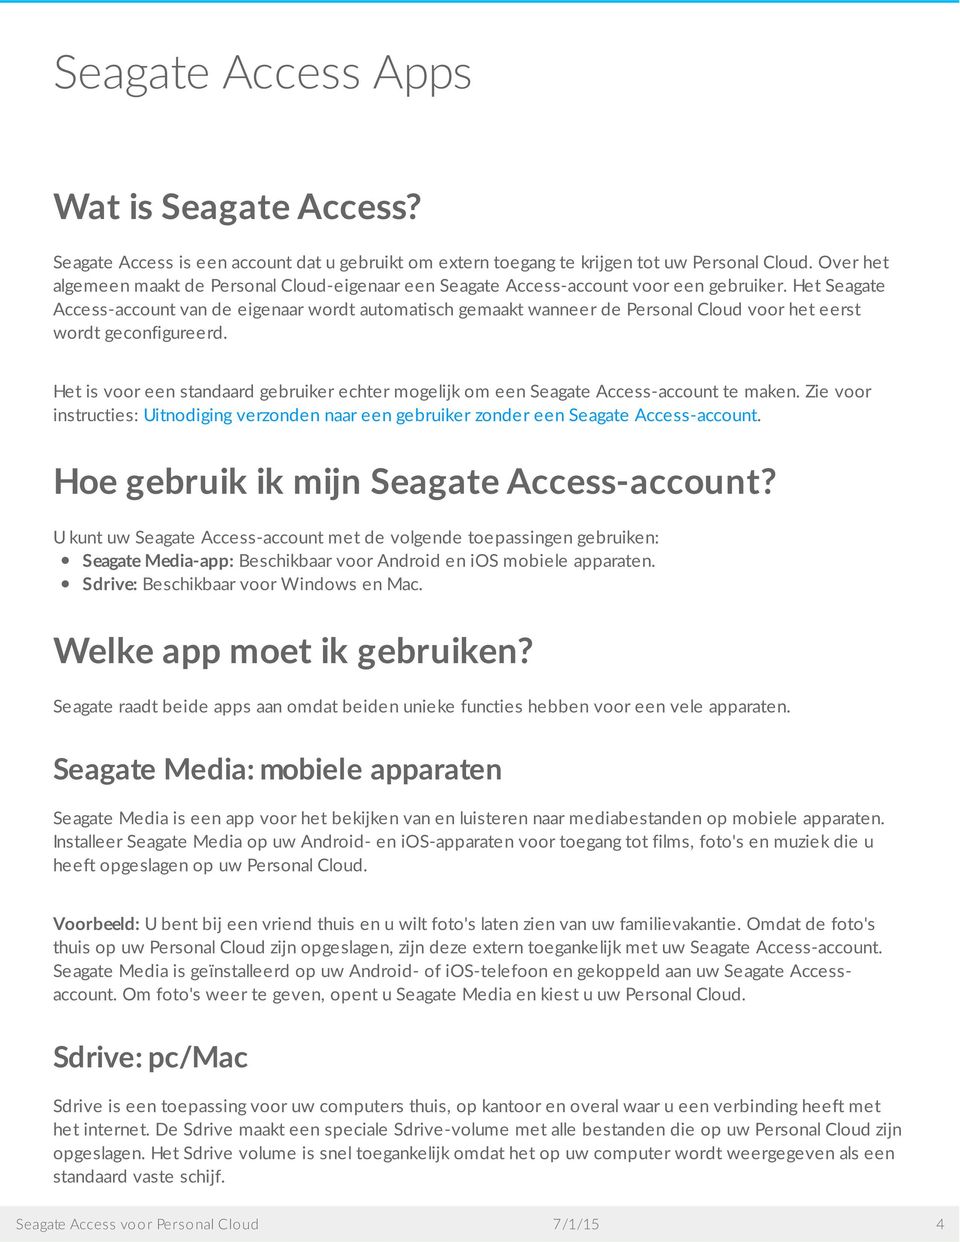 Het Seagate Access-account van de eigenaar wordt automatisch gemaakt wanneer de Personal Cloud voor het eerst wordt geconfigureerd.